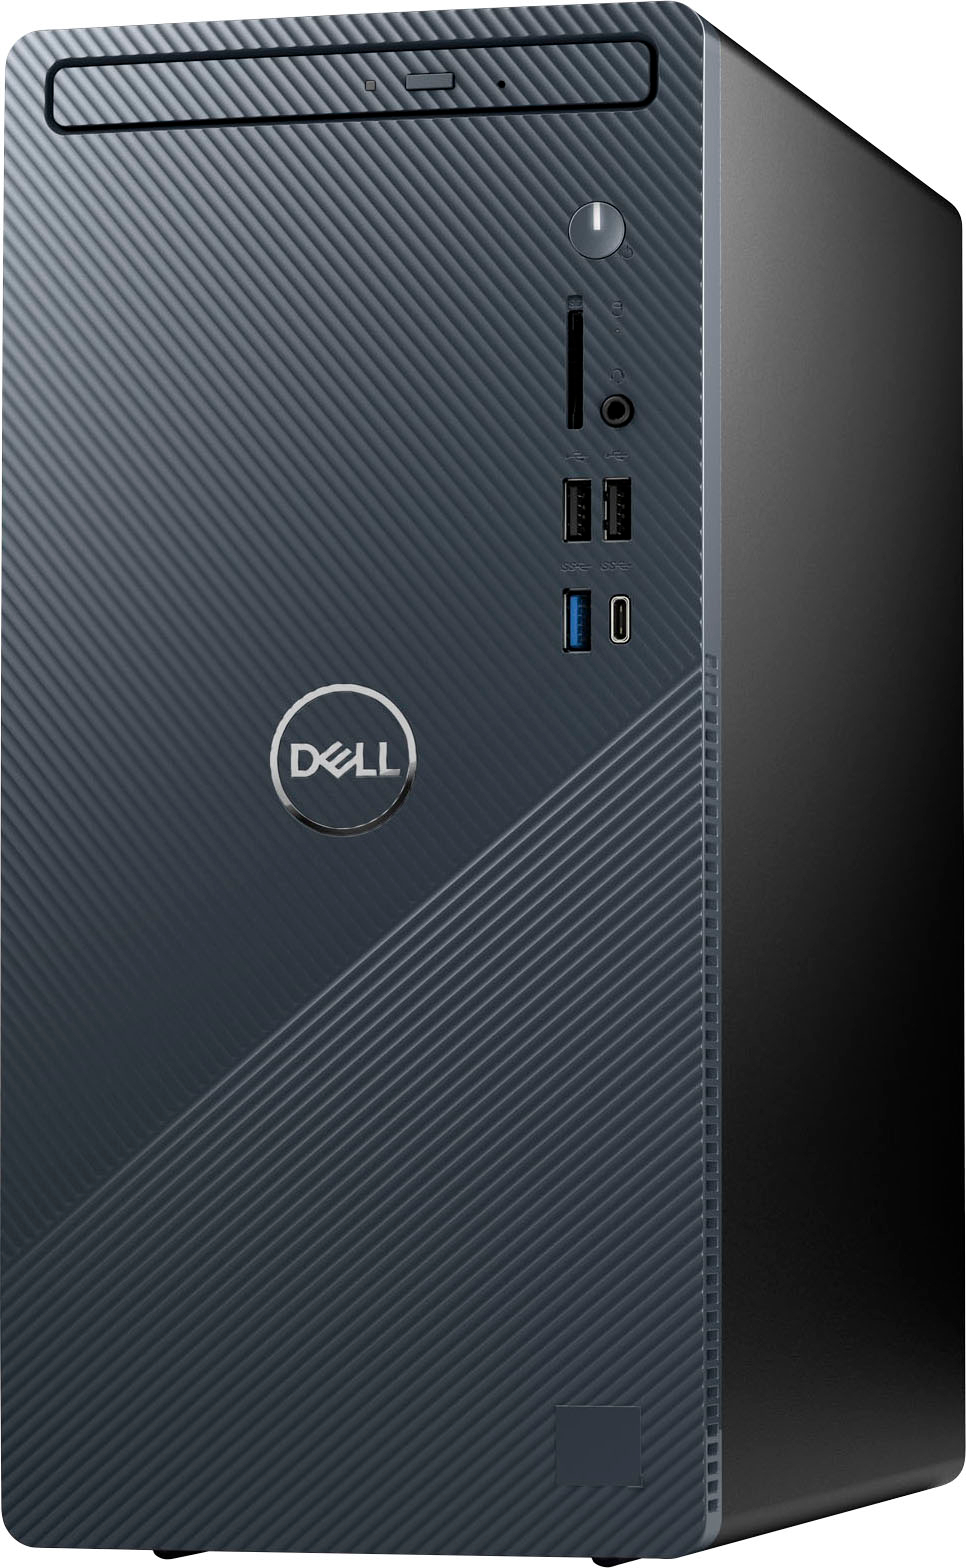 Dell I3020 5234BLU PUS